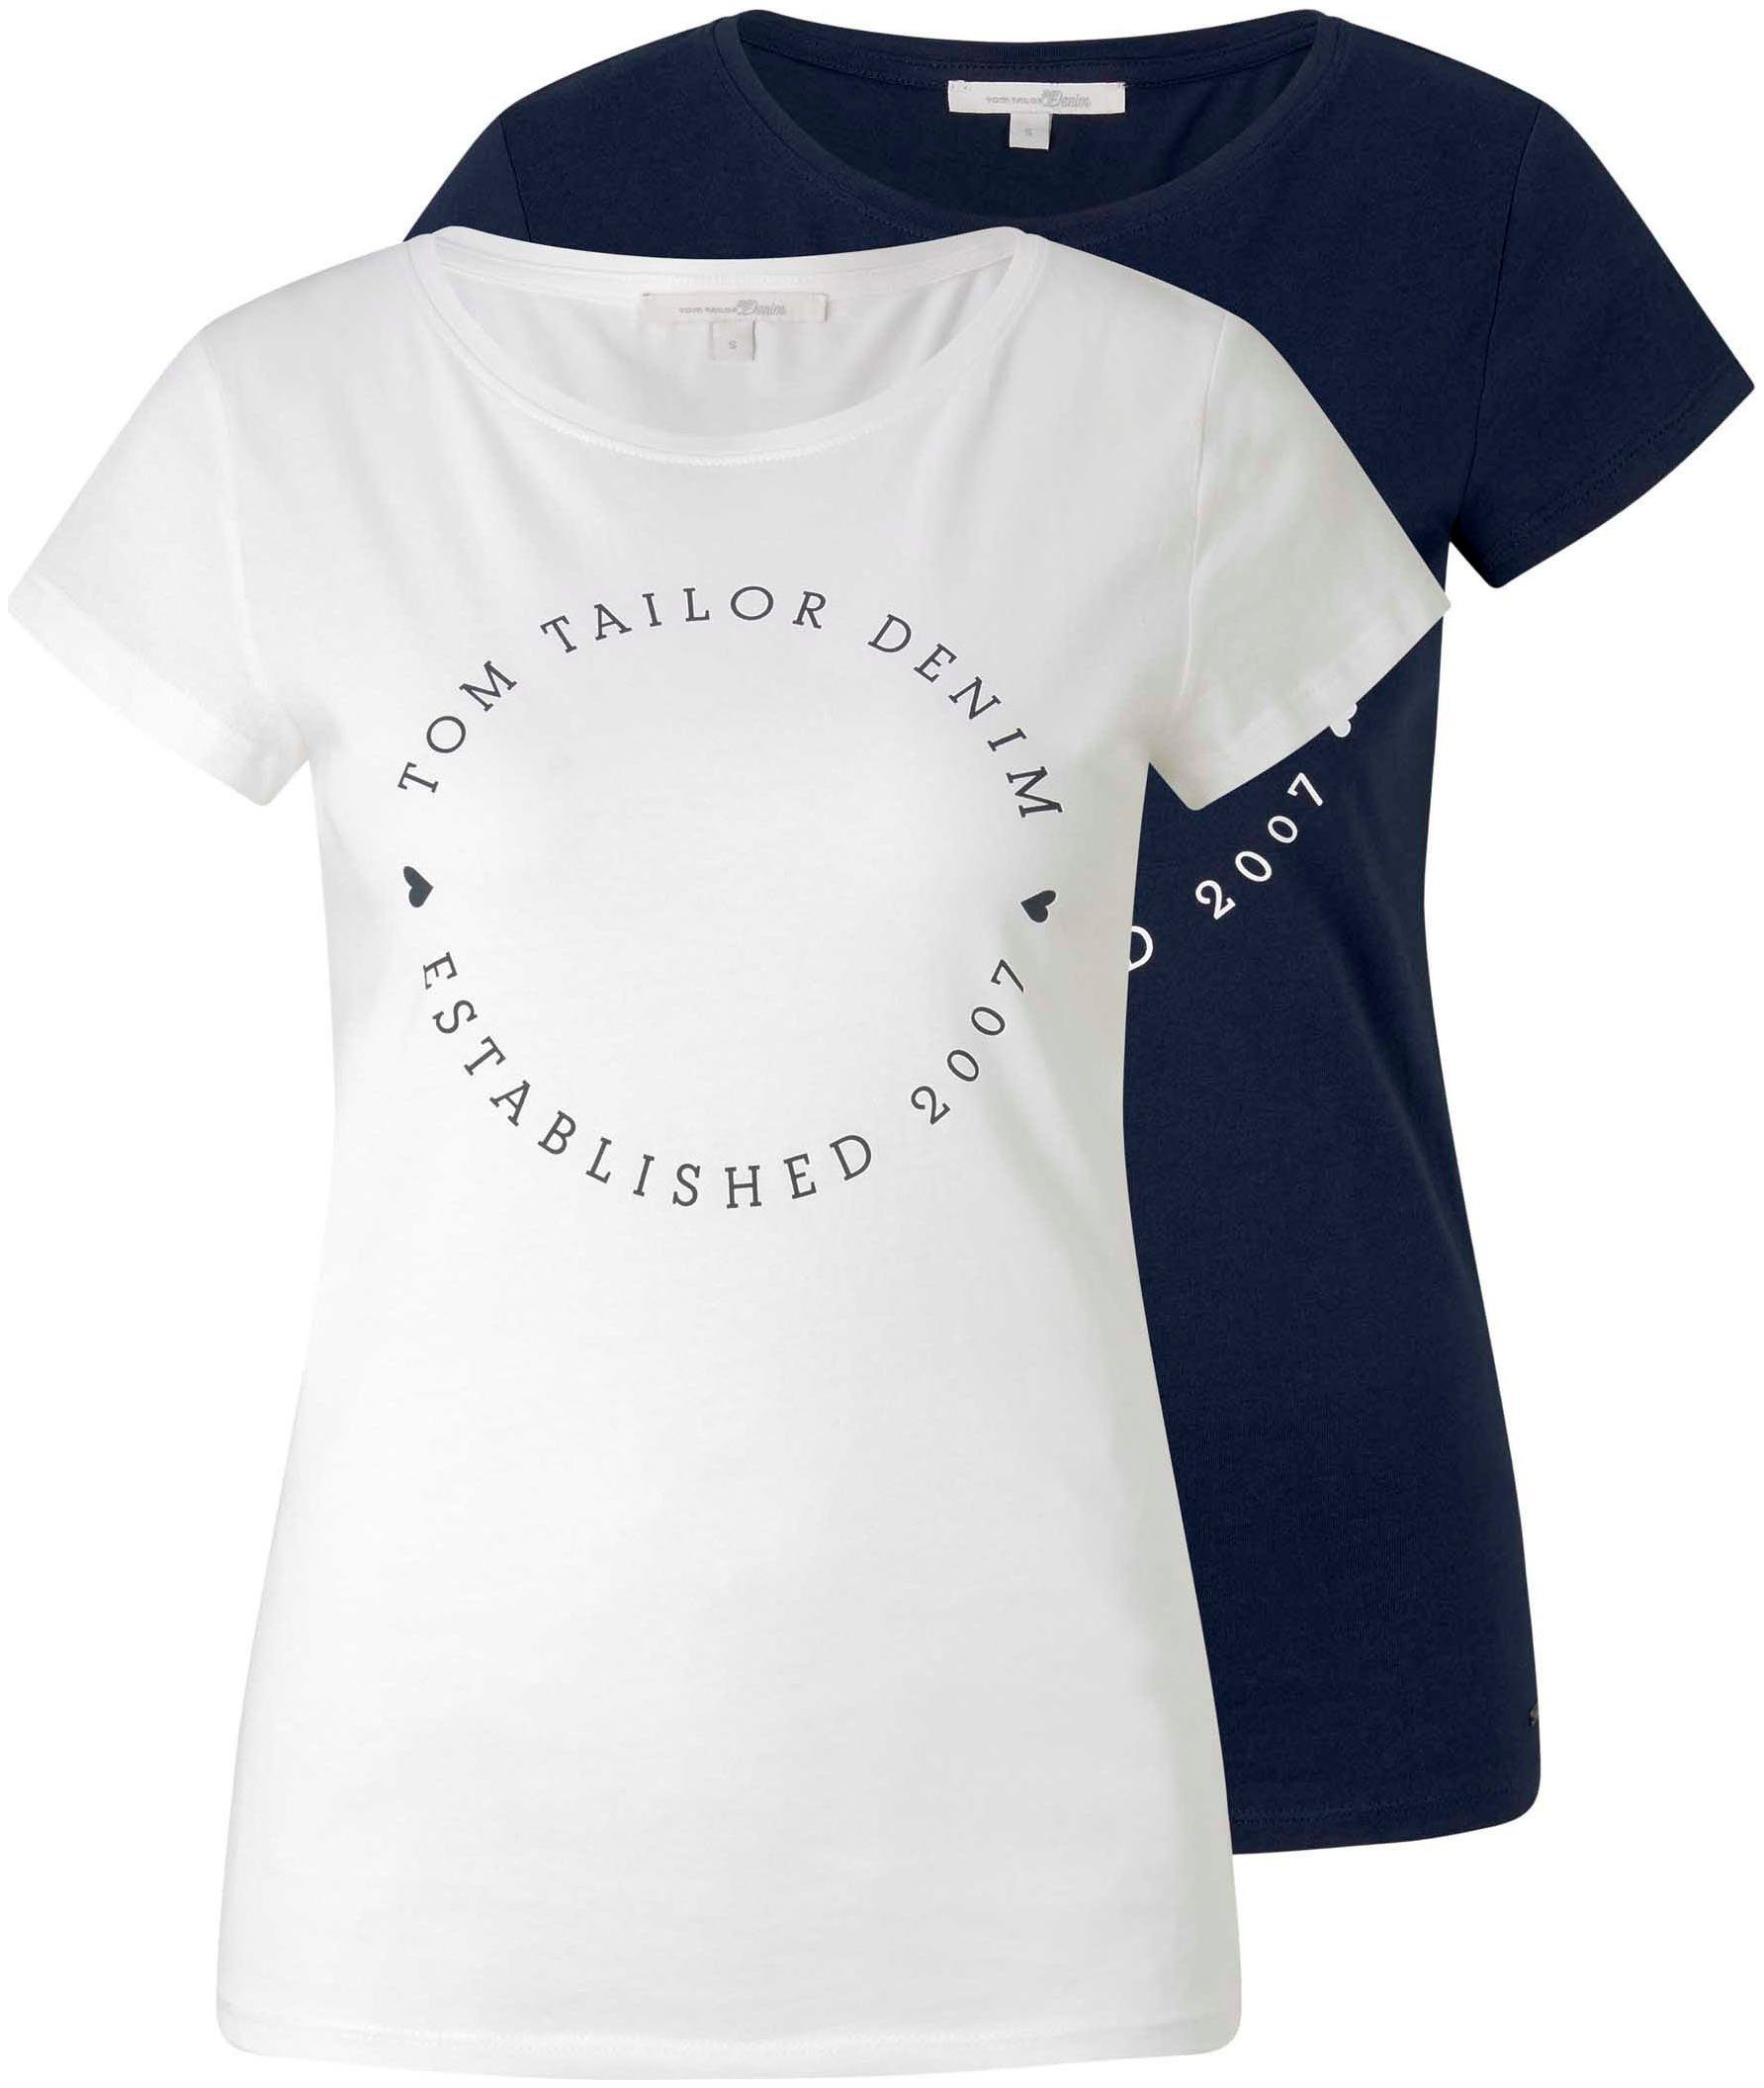 Tom Tailor T-Shirts online kaufen | OTTO